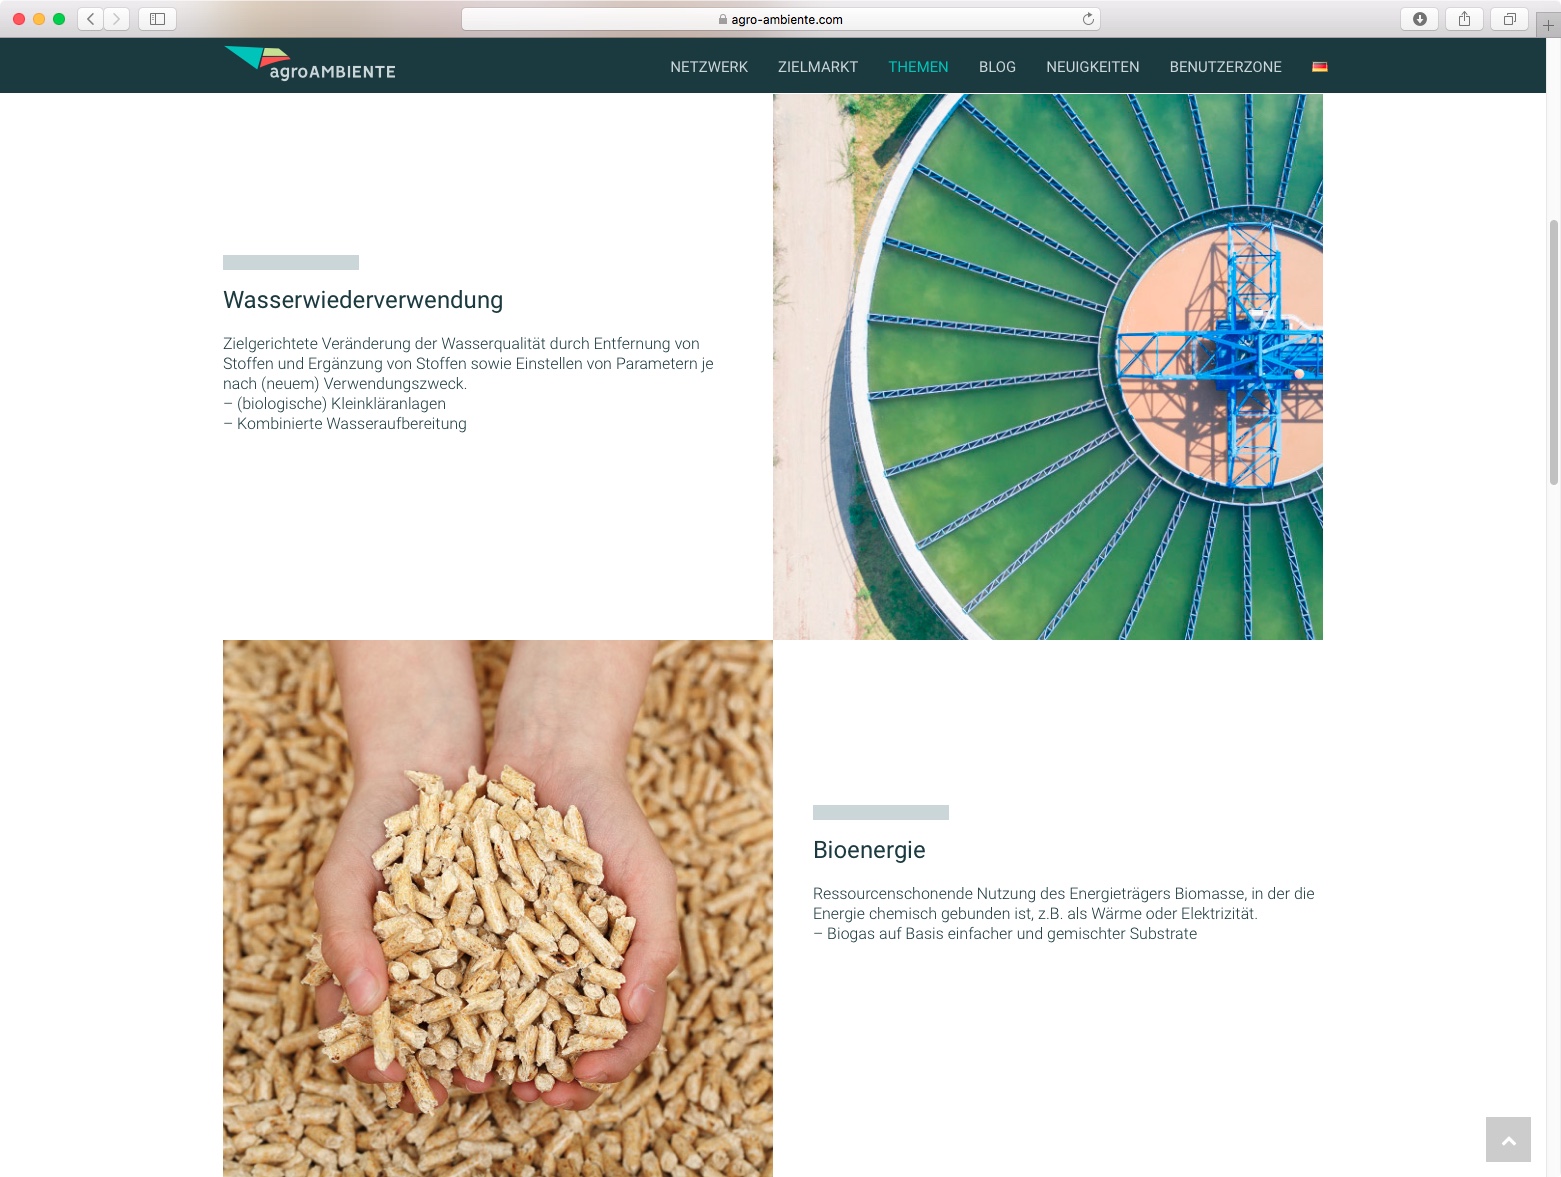 Diseño de sitio web responsive para agroAMBIENTE por Karlos Kaplan